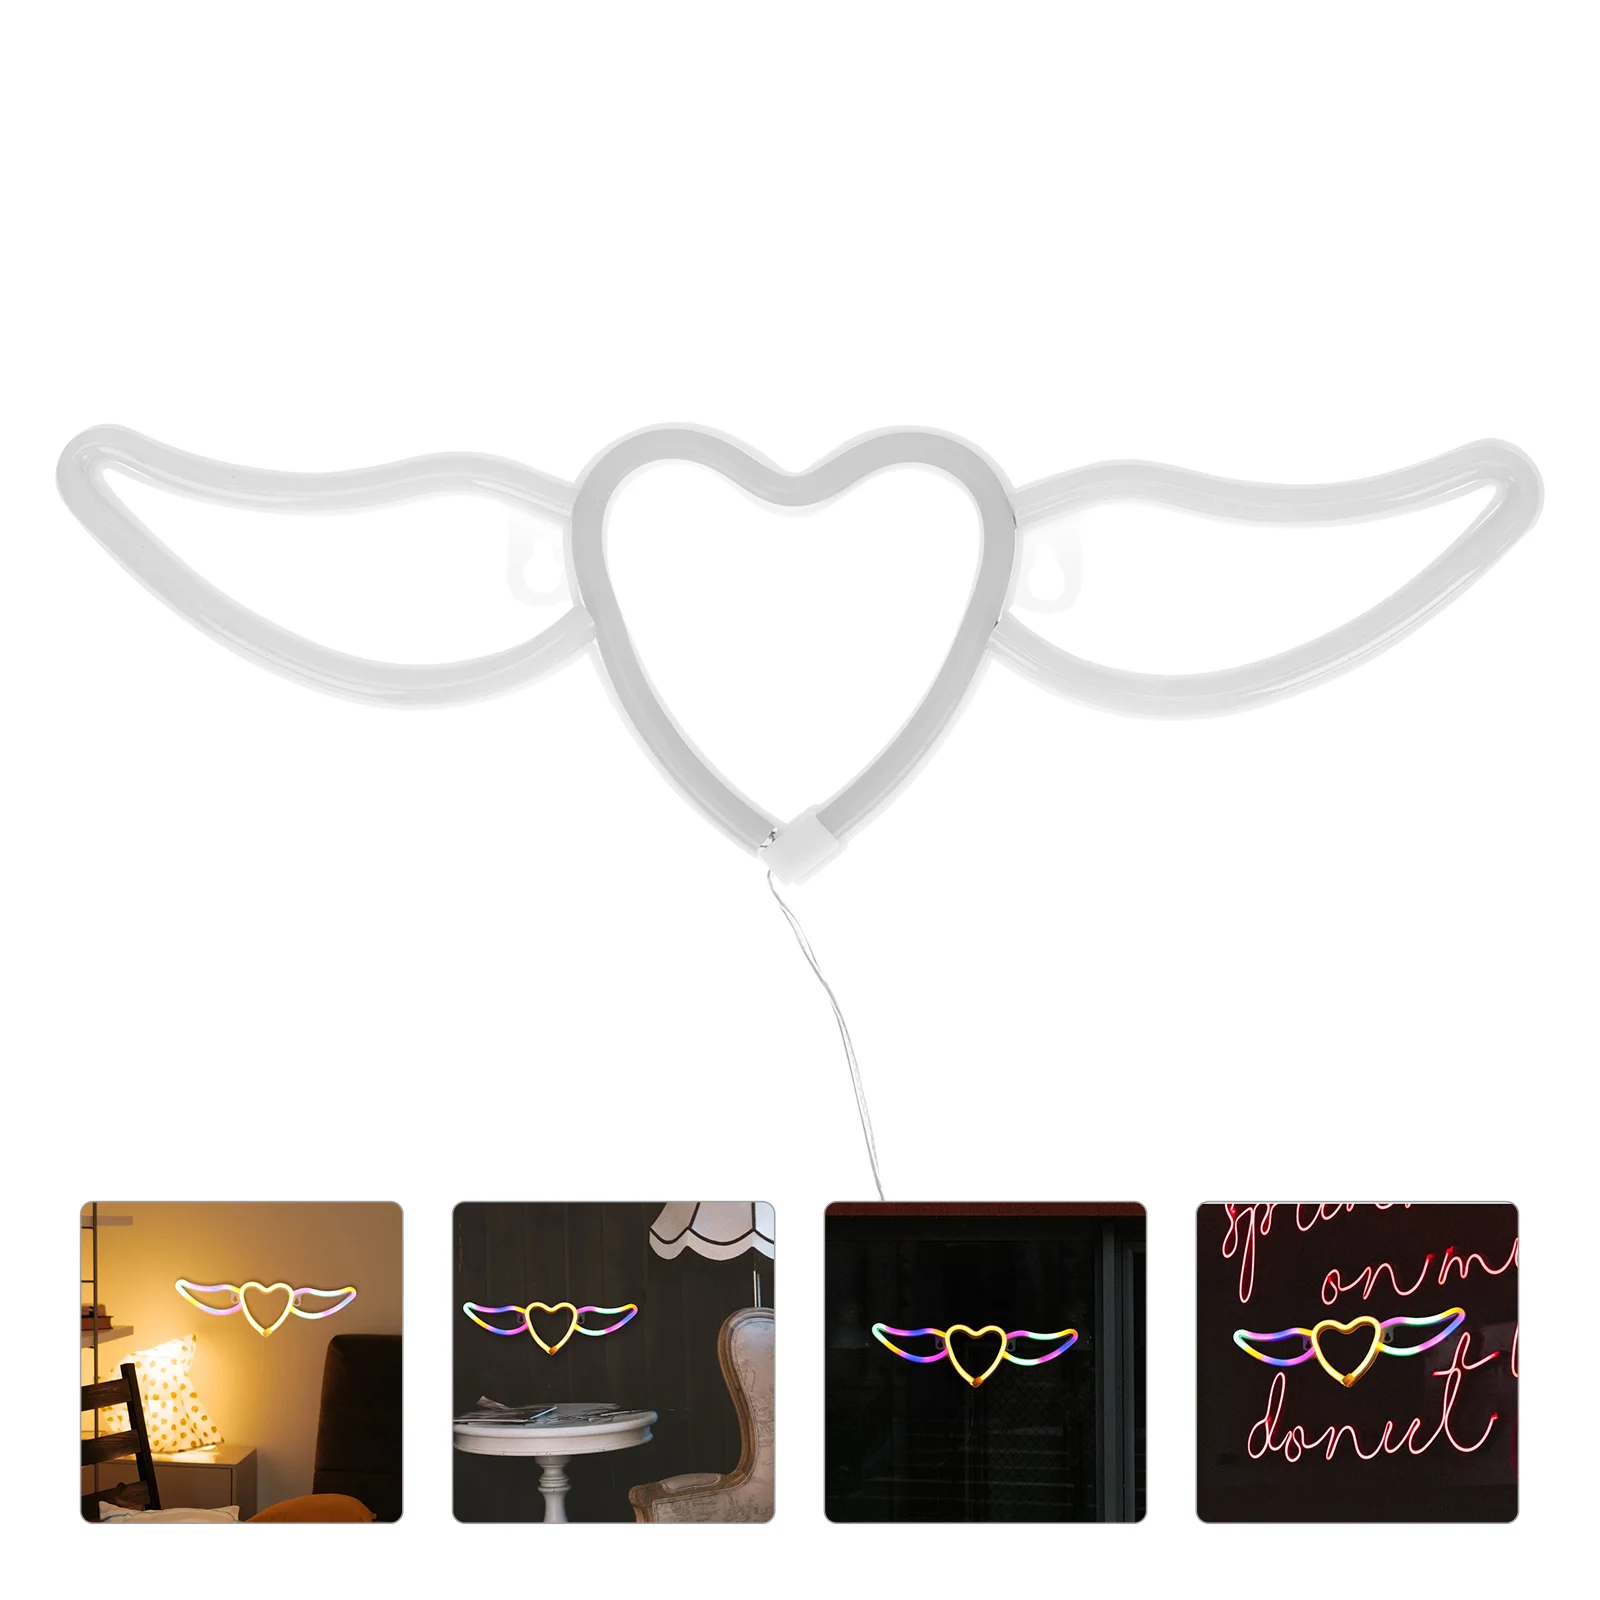 

1 шт. креативный Ночной светильник в виде крыла, декоративная стильная неоновая лампа, светосветильник Декор